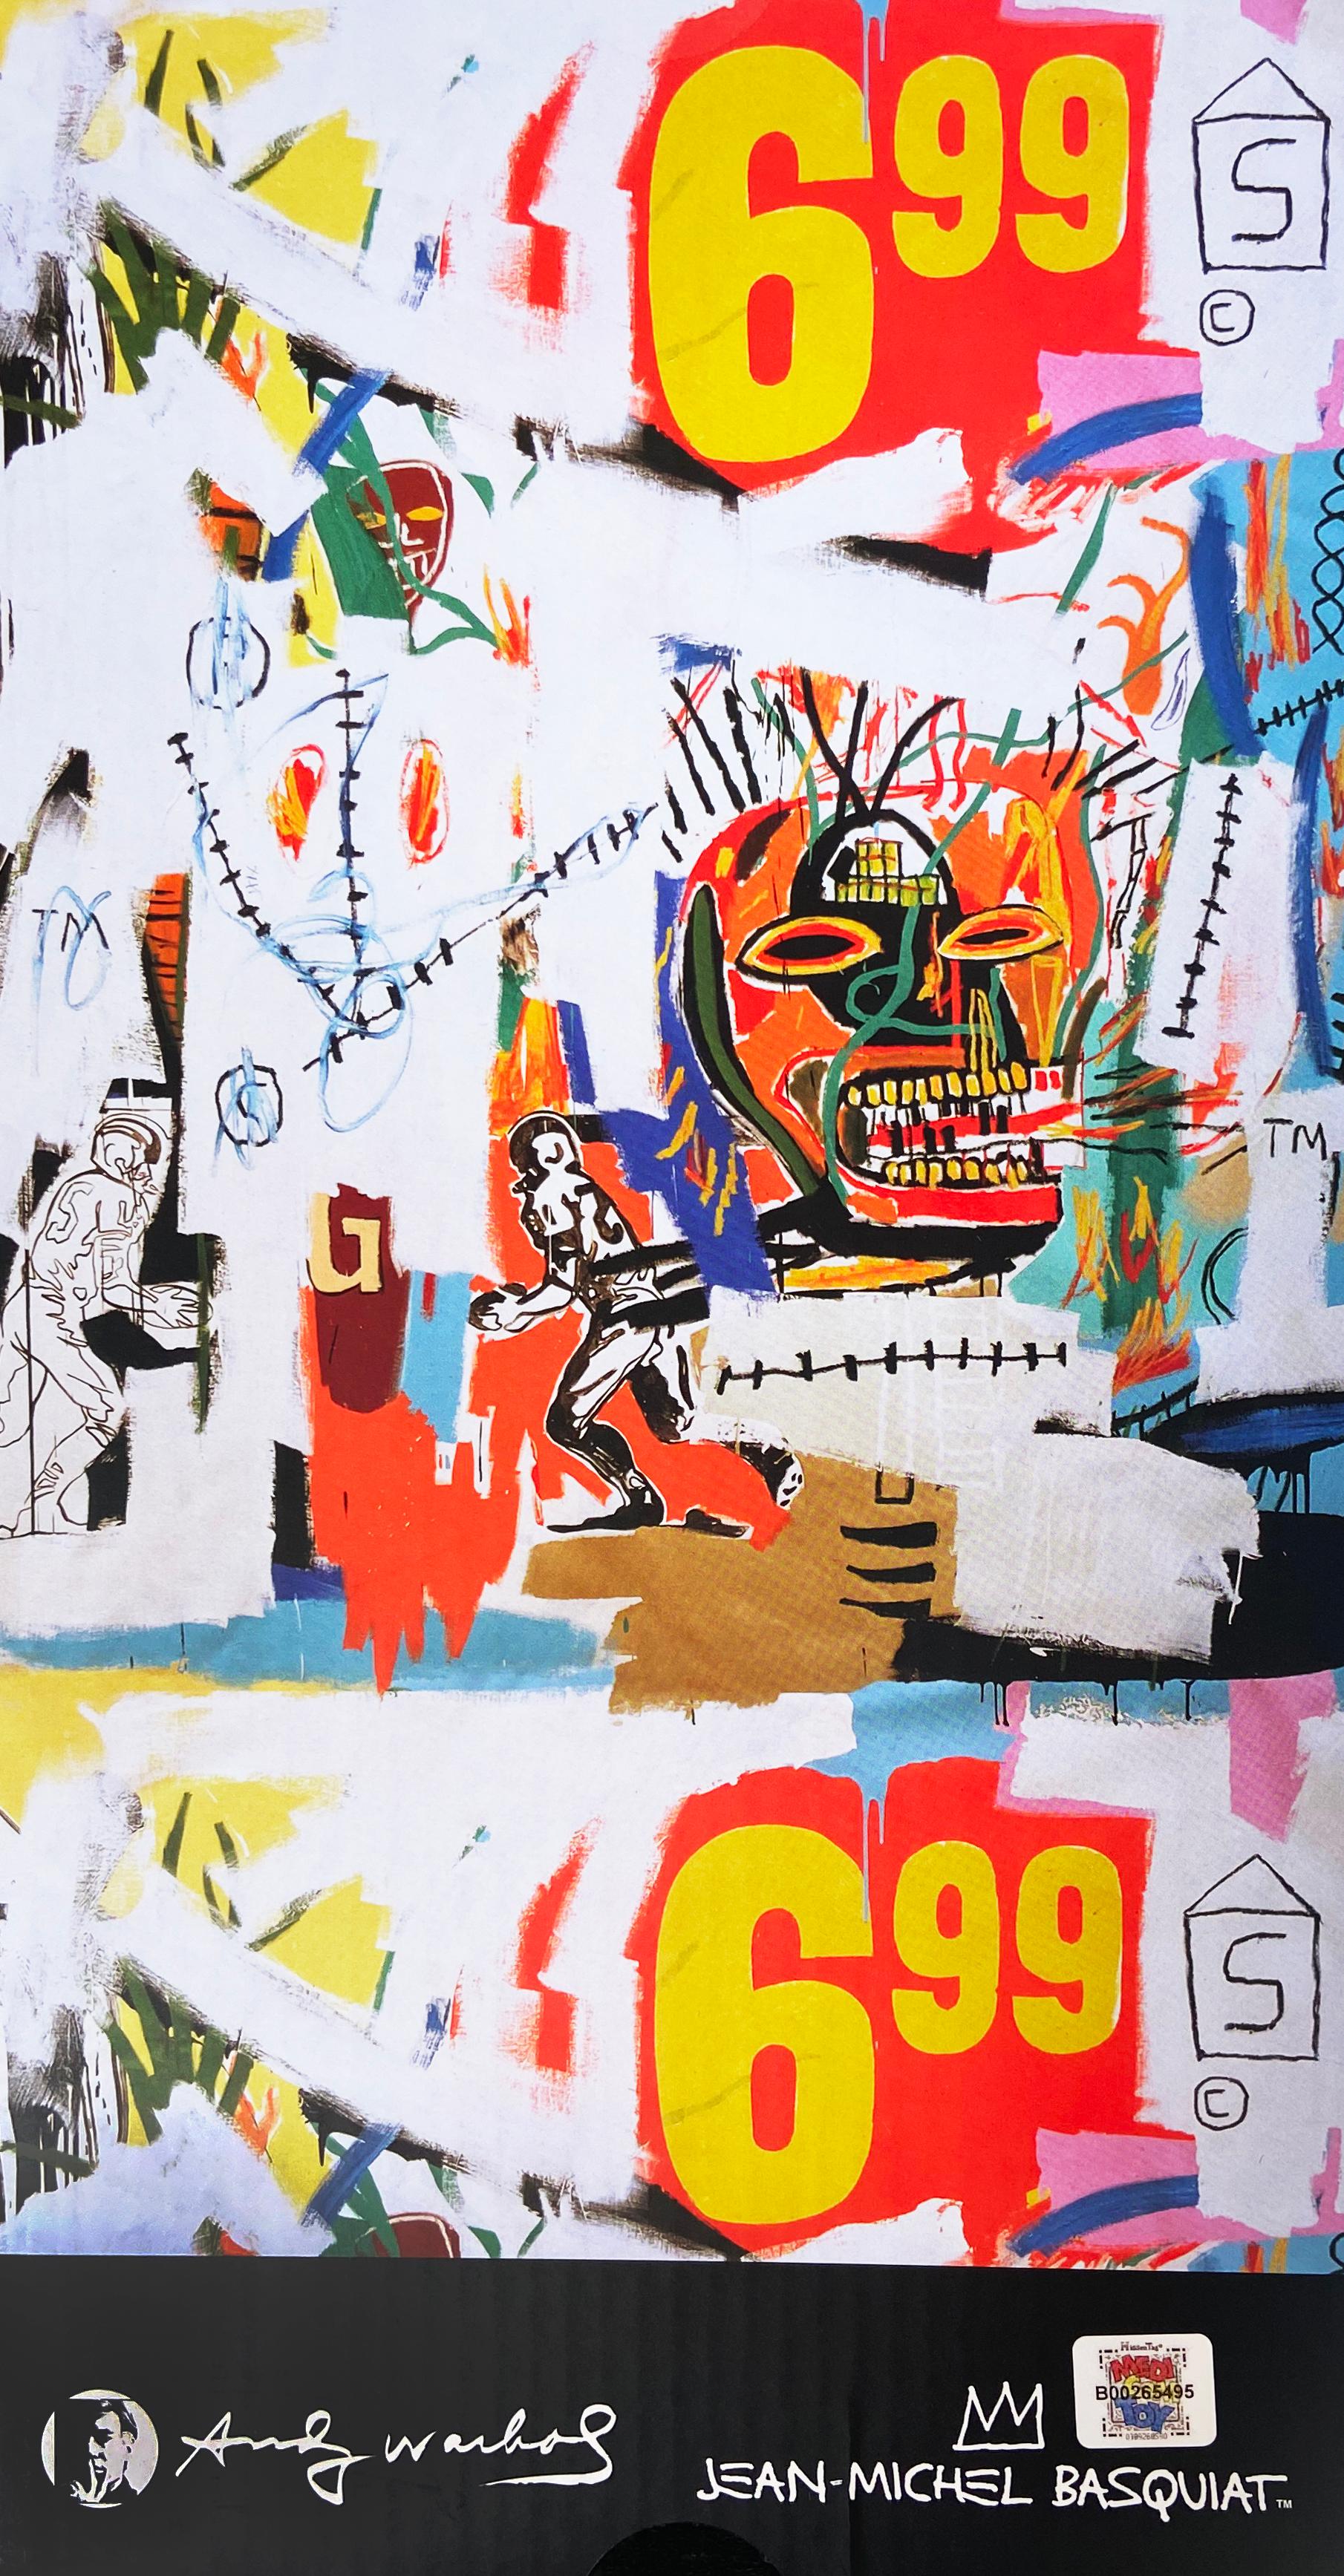 Warhol Basquiat-Baumwoll 400 % (Warhol Basquiat BE@RBRICK)  (Streetart), Sculpture, von after Jean-Michel Basquiat